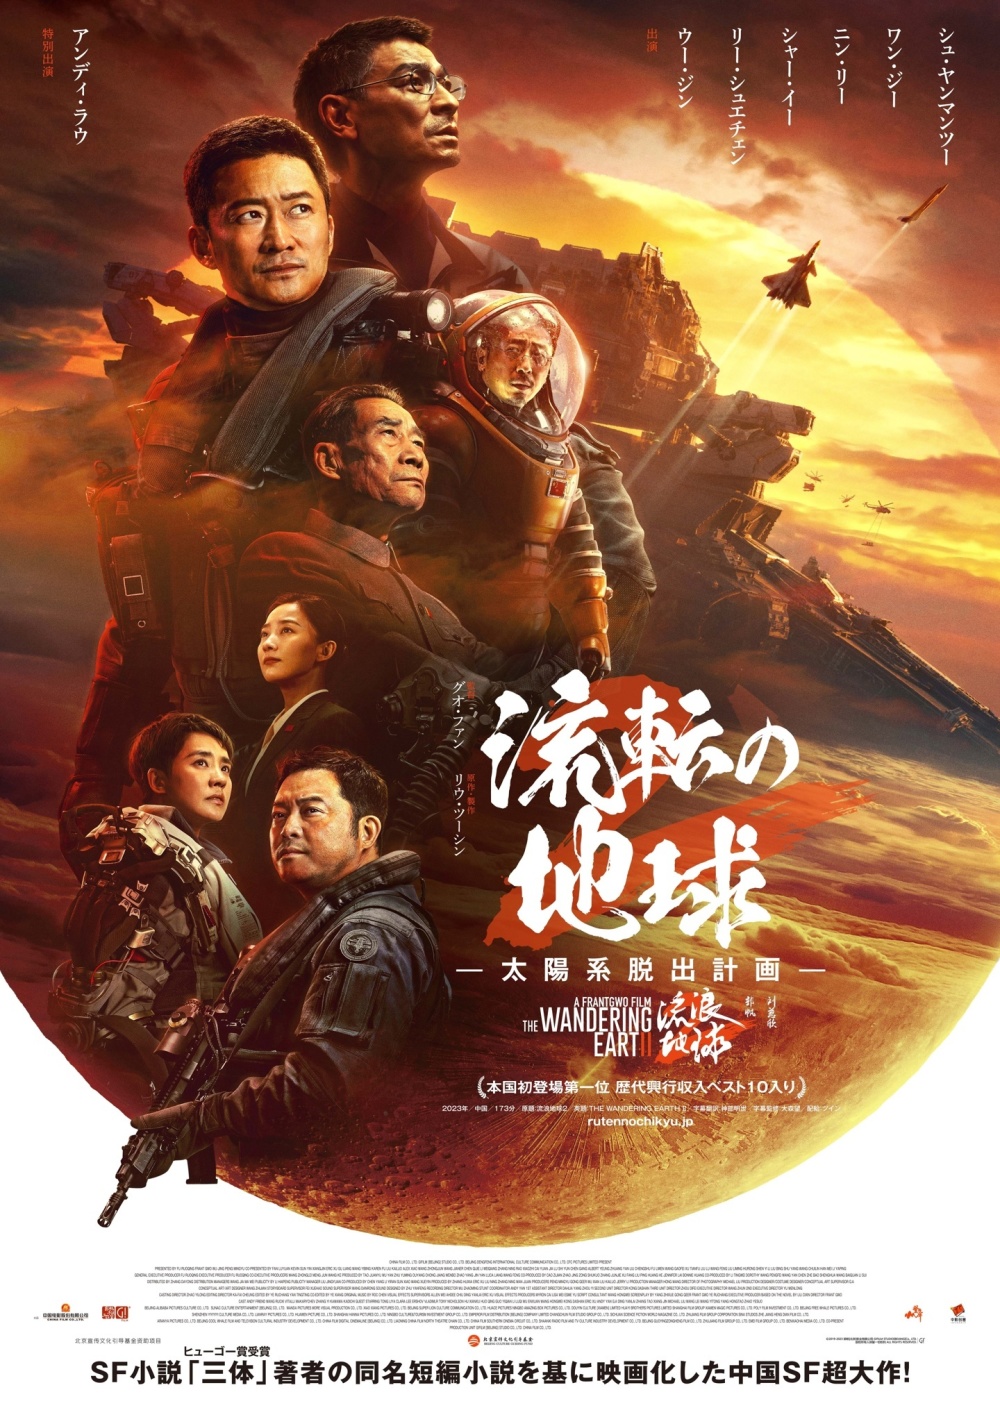 国产科幻大片《流浪地球 2》宣布 3 月 22 日在日本上映